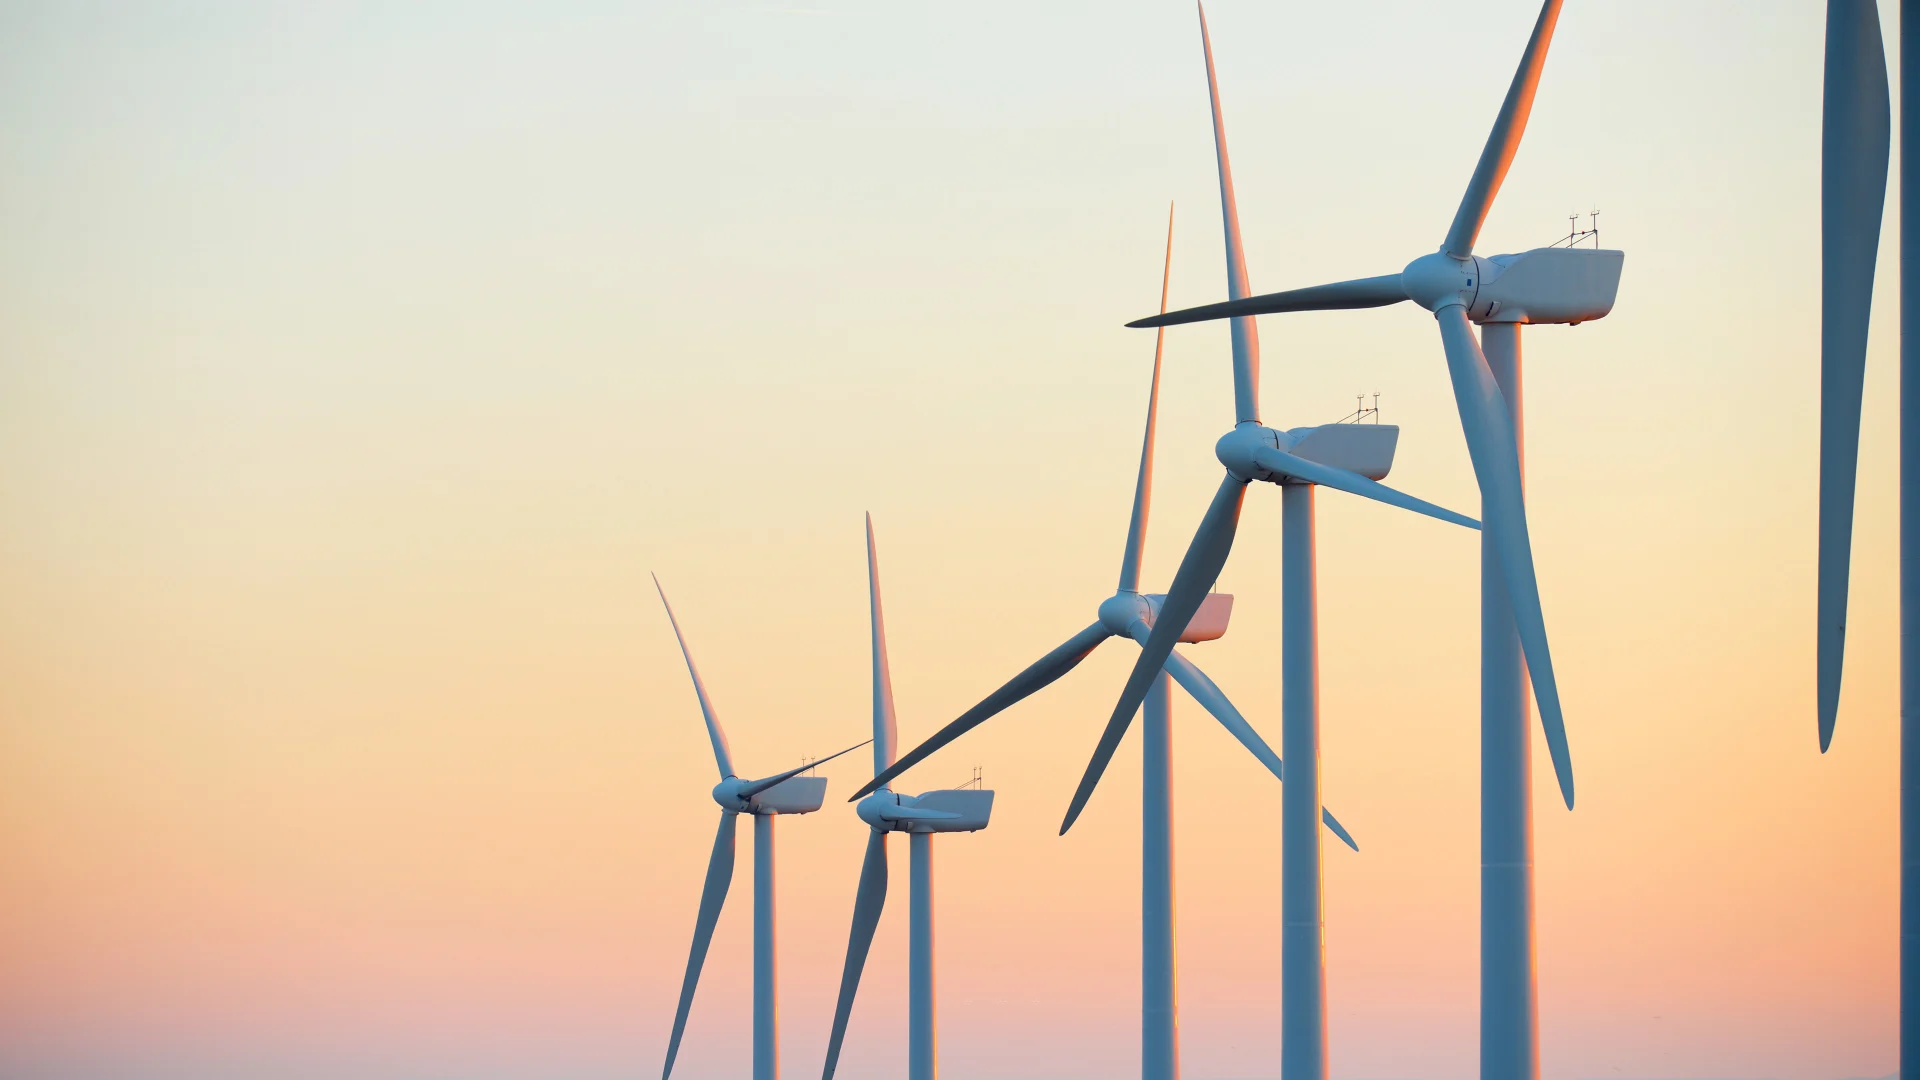 Des éoliennes pour produire de l'électricité durable au lever du soleil